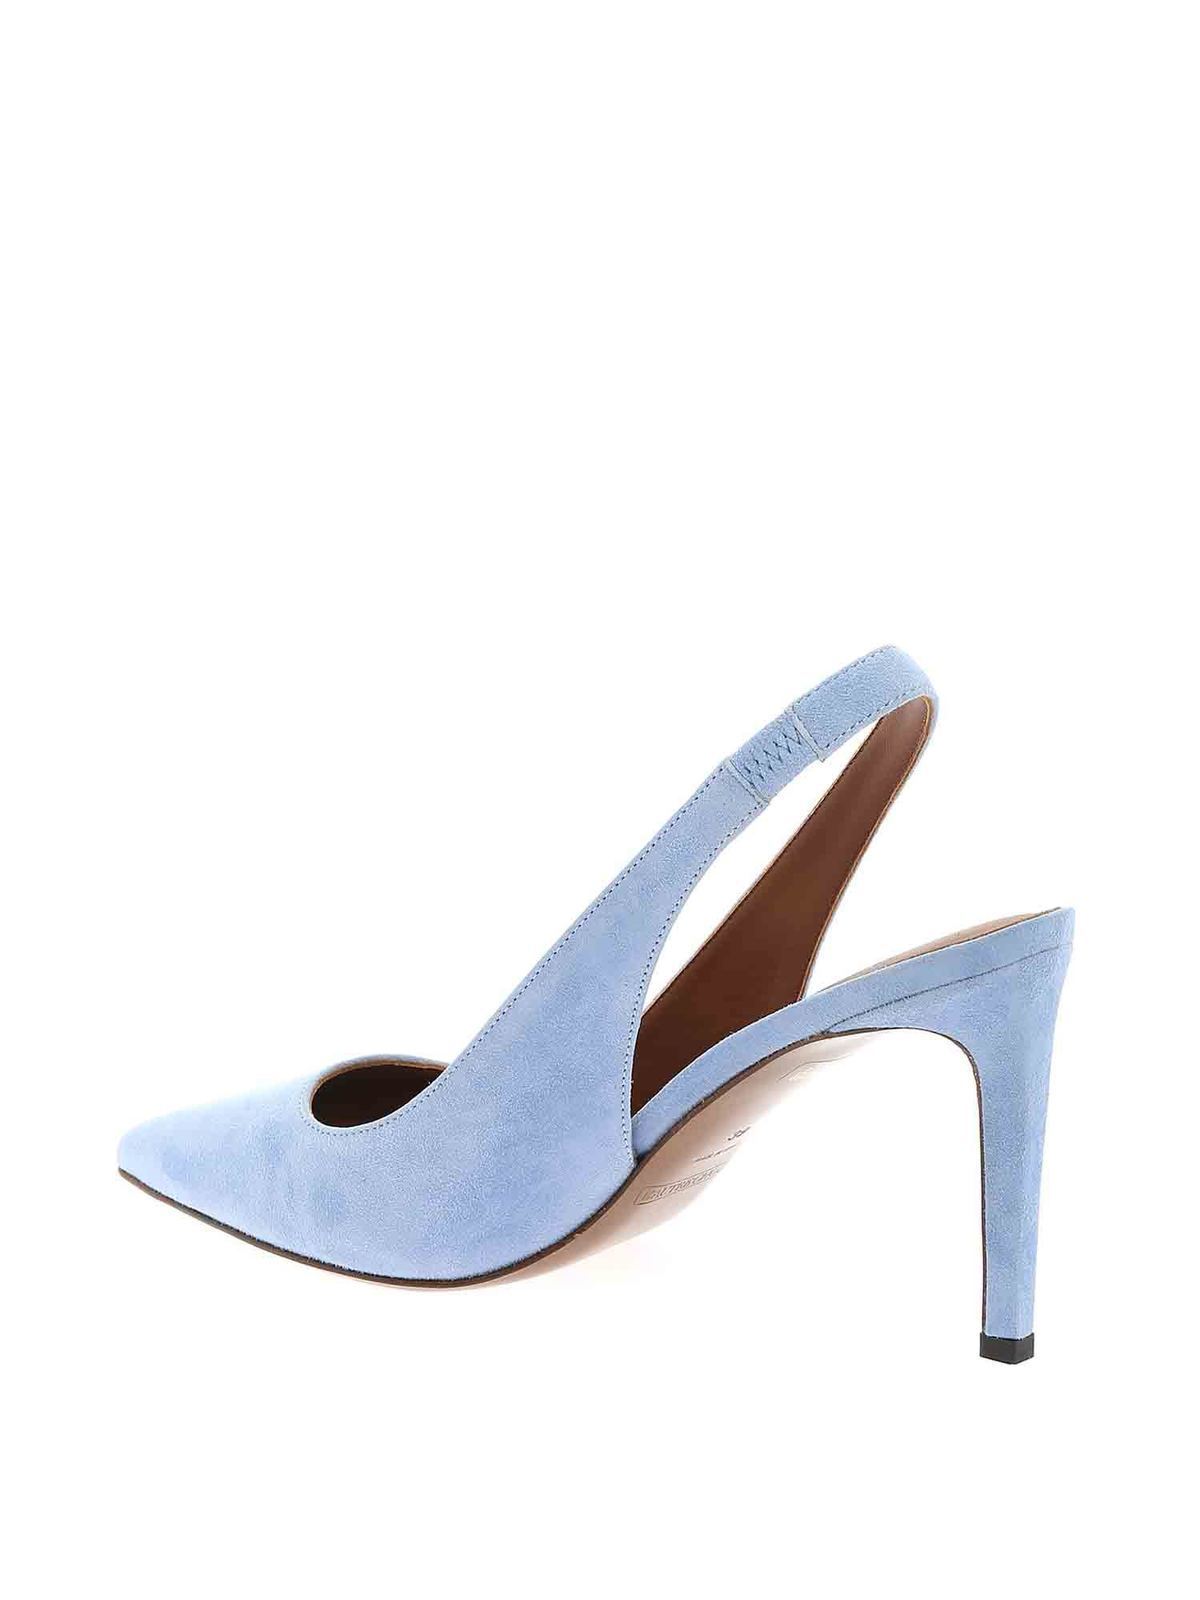 Court shoes L' Autre Chose - Suede slingbacks in light blue ...